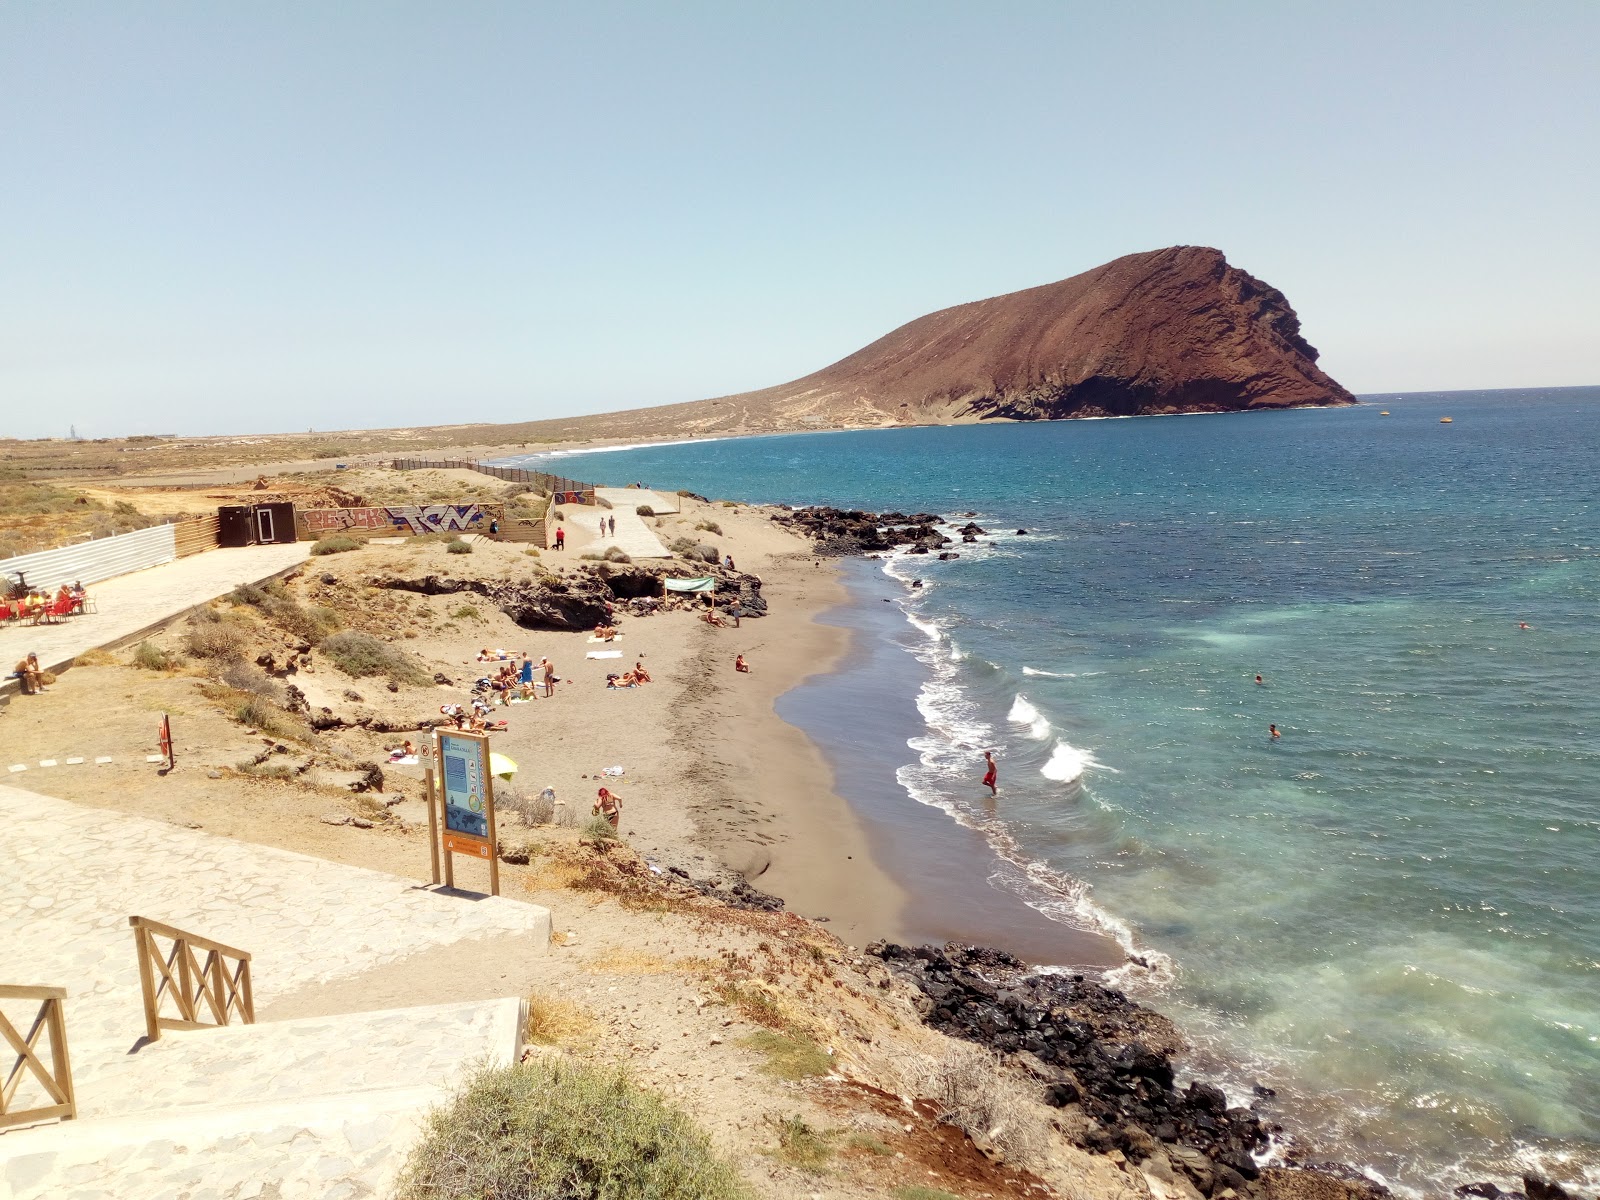 Playa de Sotavento'in fotoğrafı kahverengi kum yüzey ile